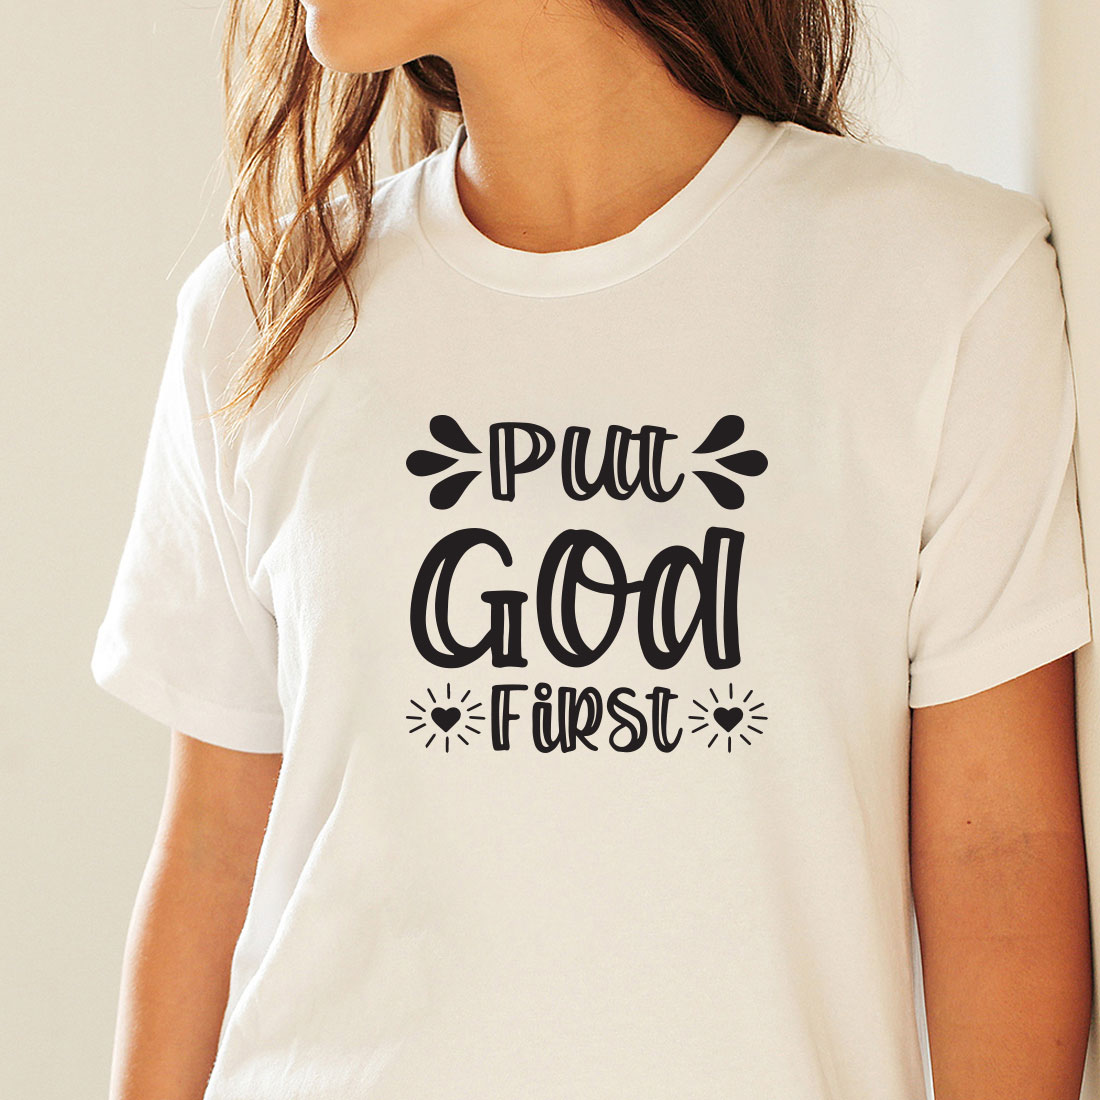 Religious T-shirt Design Bundle Vol-5 preview image.